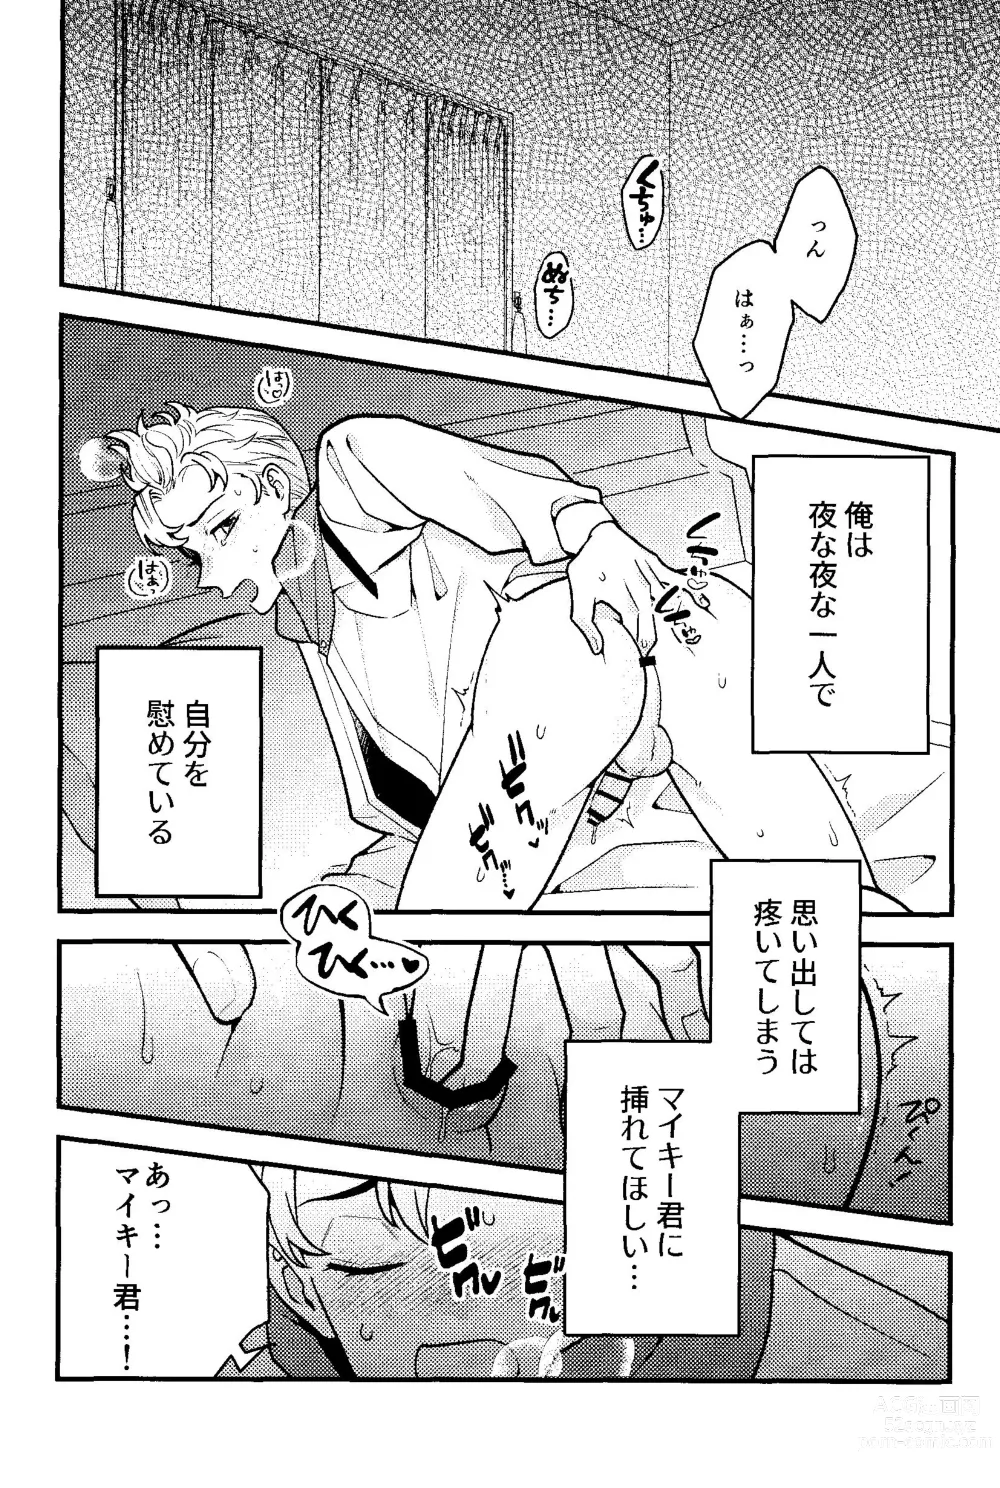 Page 7 of doujinshi Jitsuwa kaihatsu sumidesu